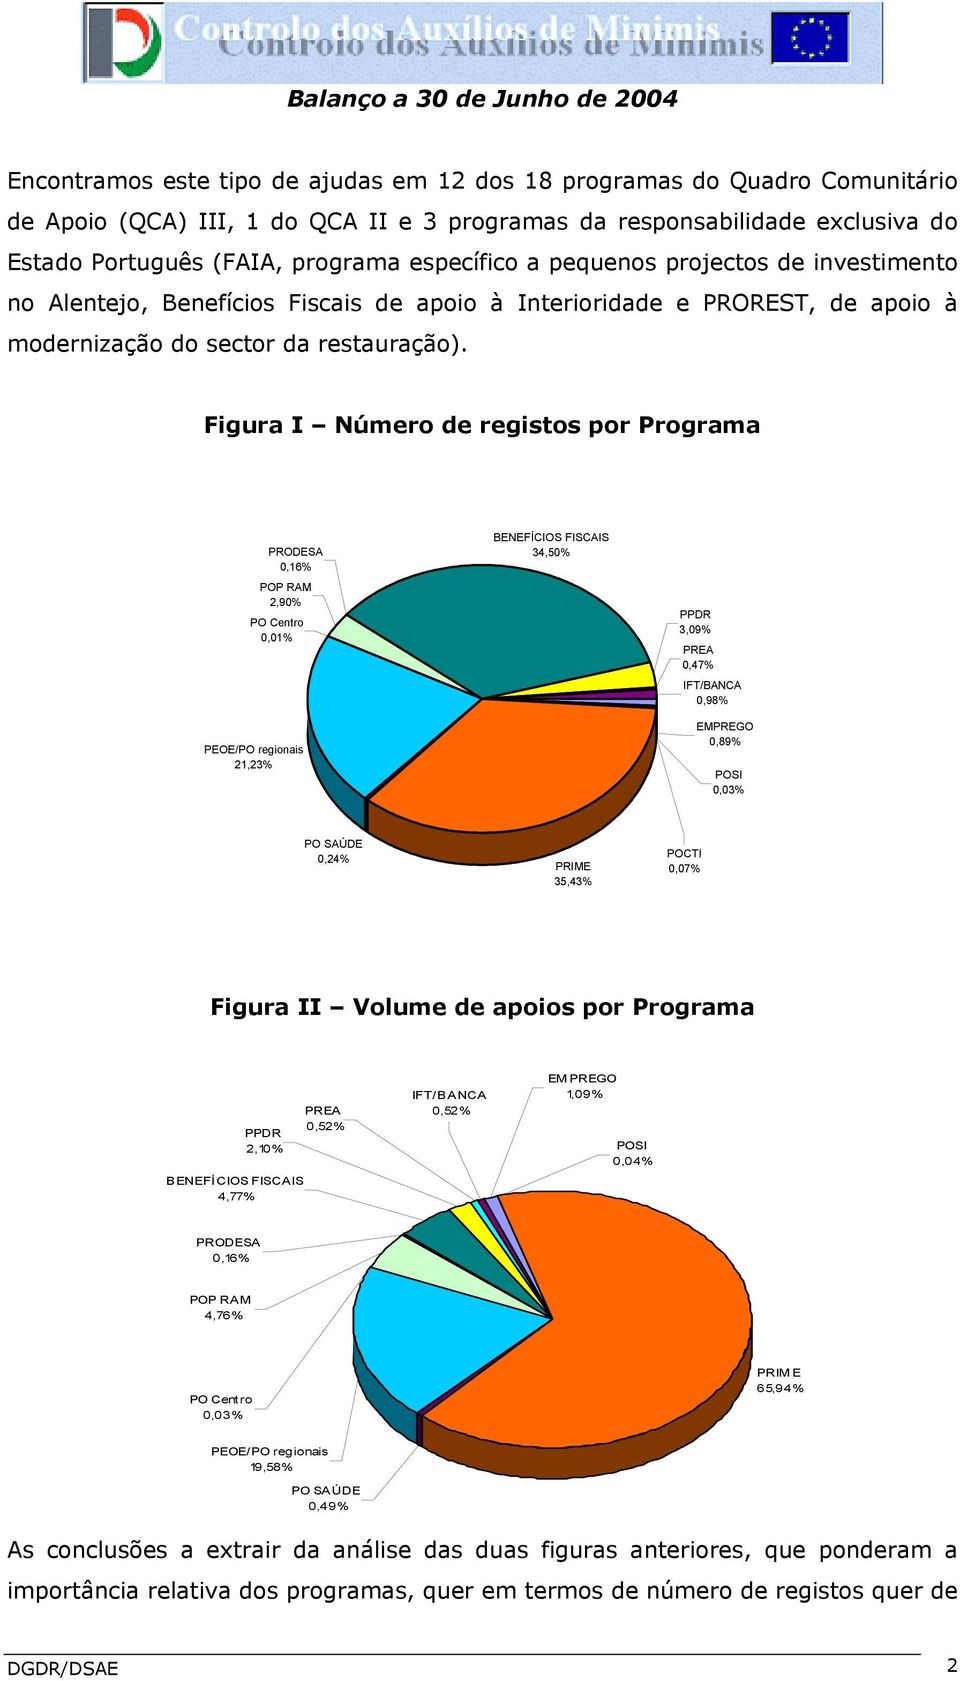 Figura I Número de registos por Programa PRODESA 0,16% POP RAM 2,90% PO Centro 0,01% PEOE/PO regionais 21,23% BENEFÍCIOS FISCAIS 34,50% PPDR 3,09% PREA 0,47% IFT/BANCA 0,98% EMPREGO 0,89% POSI 0,03%